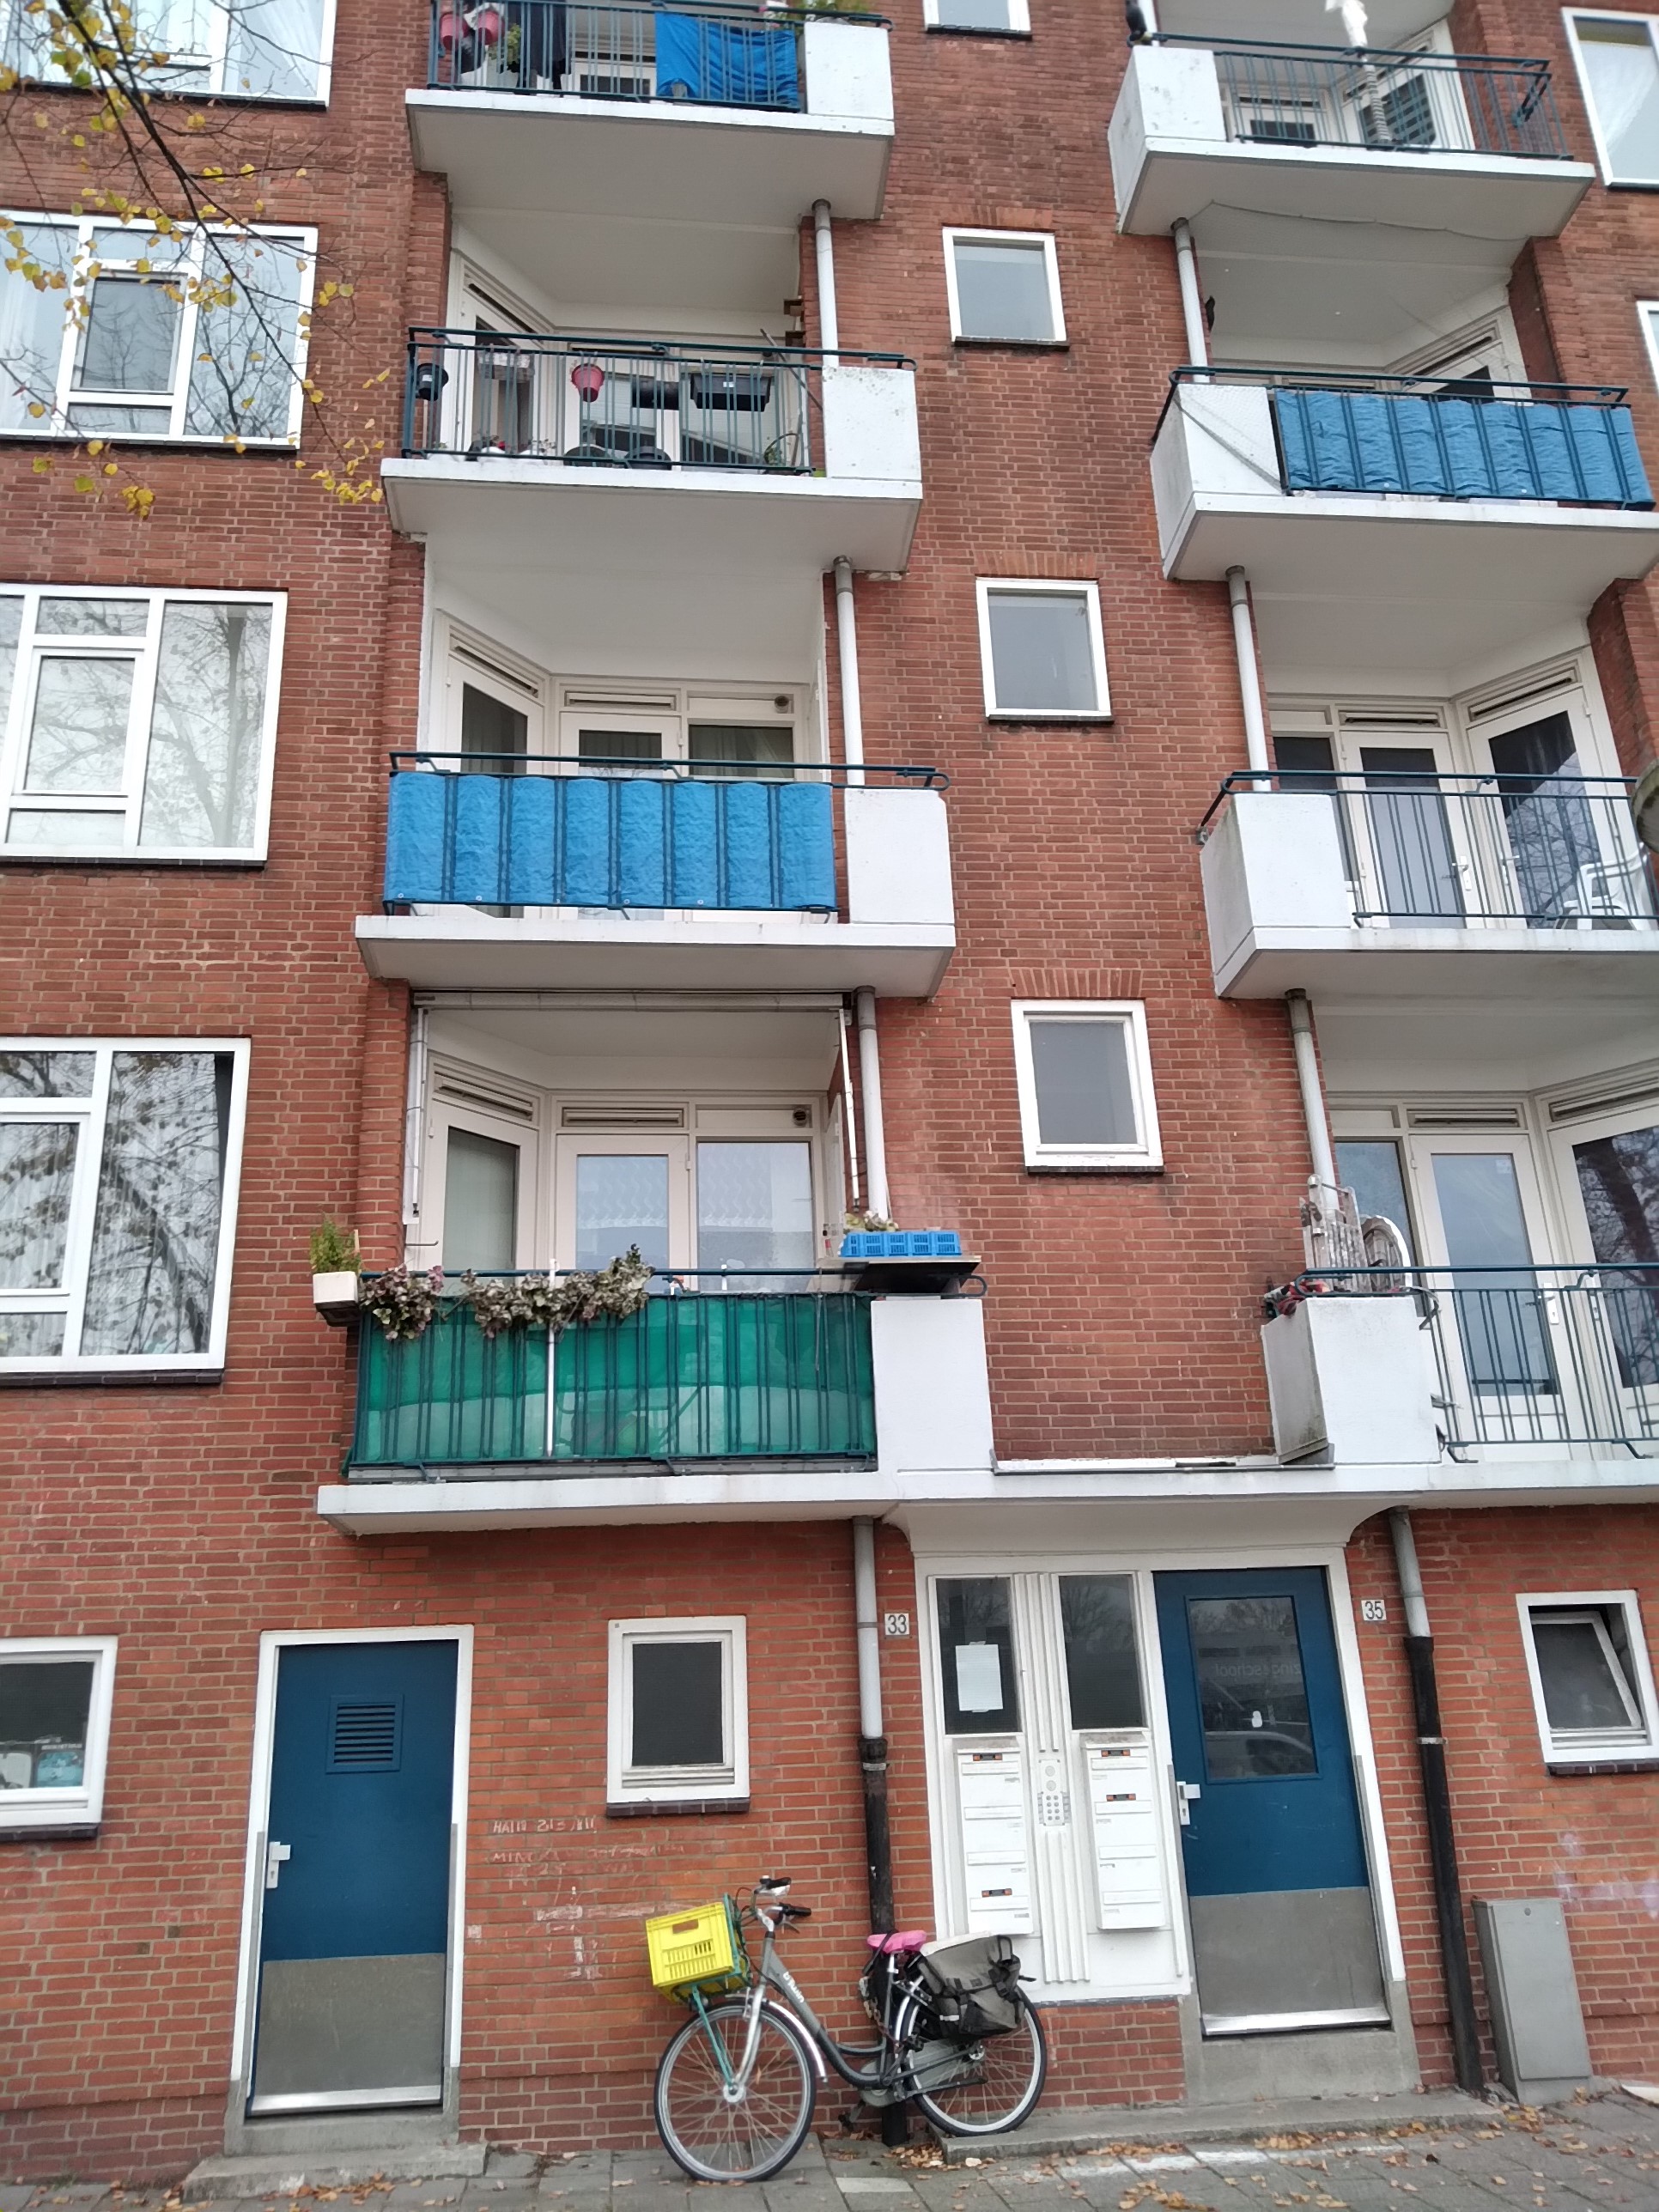 Bedachtzaam Appartement Verval Jacob Geelstraat - Wikipedia